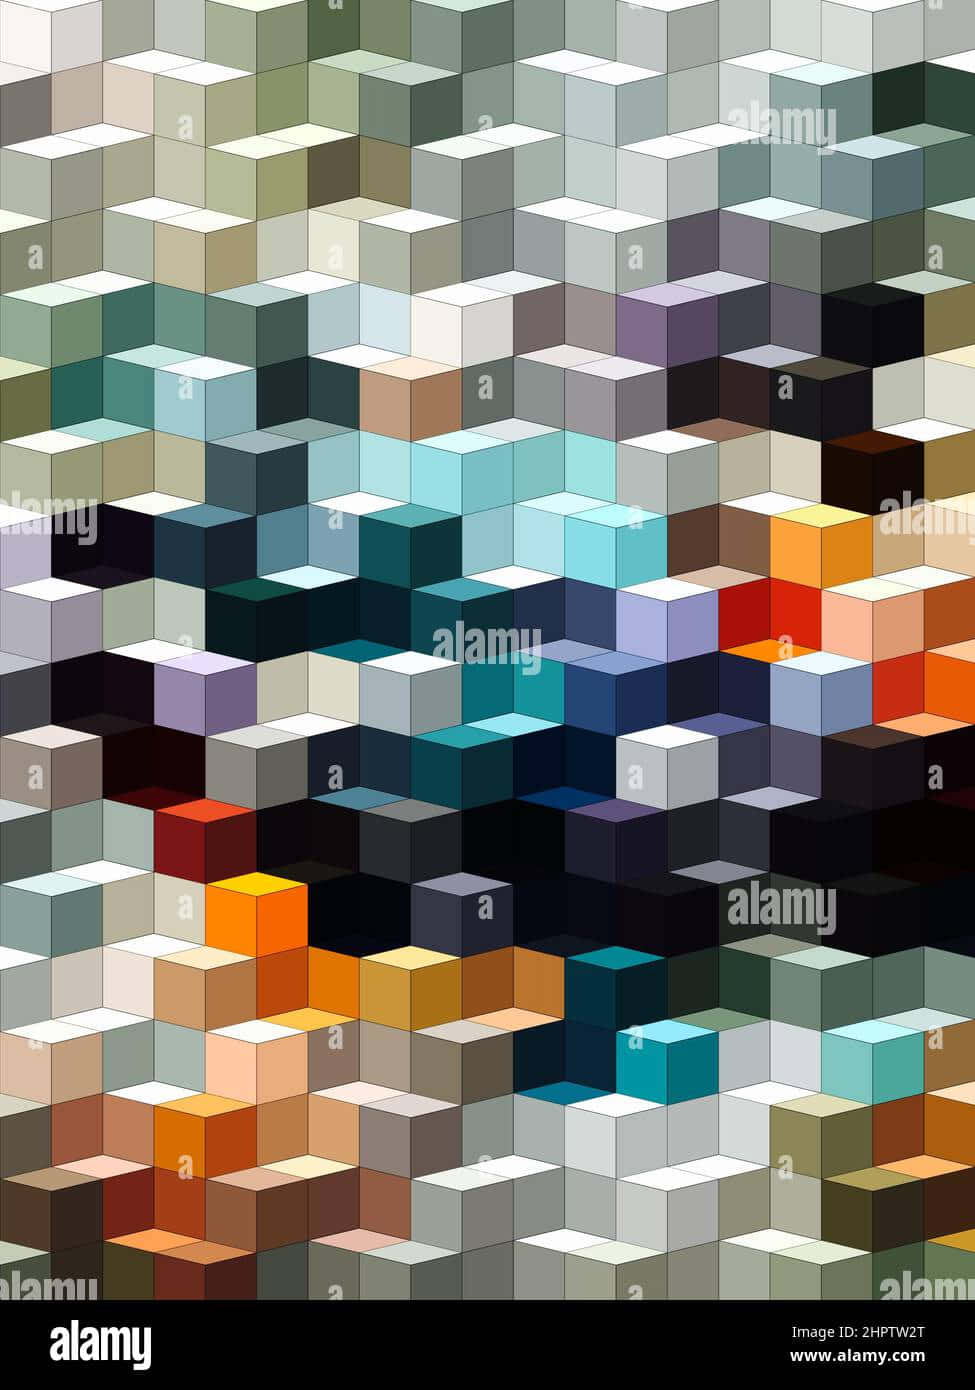 Abstraktergeometrischer Würfel-hintergrund - Lizenzfreies Bild Wallpaper